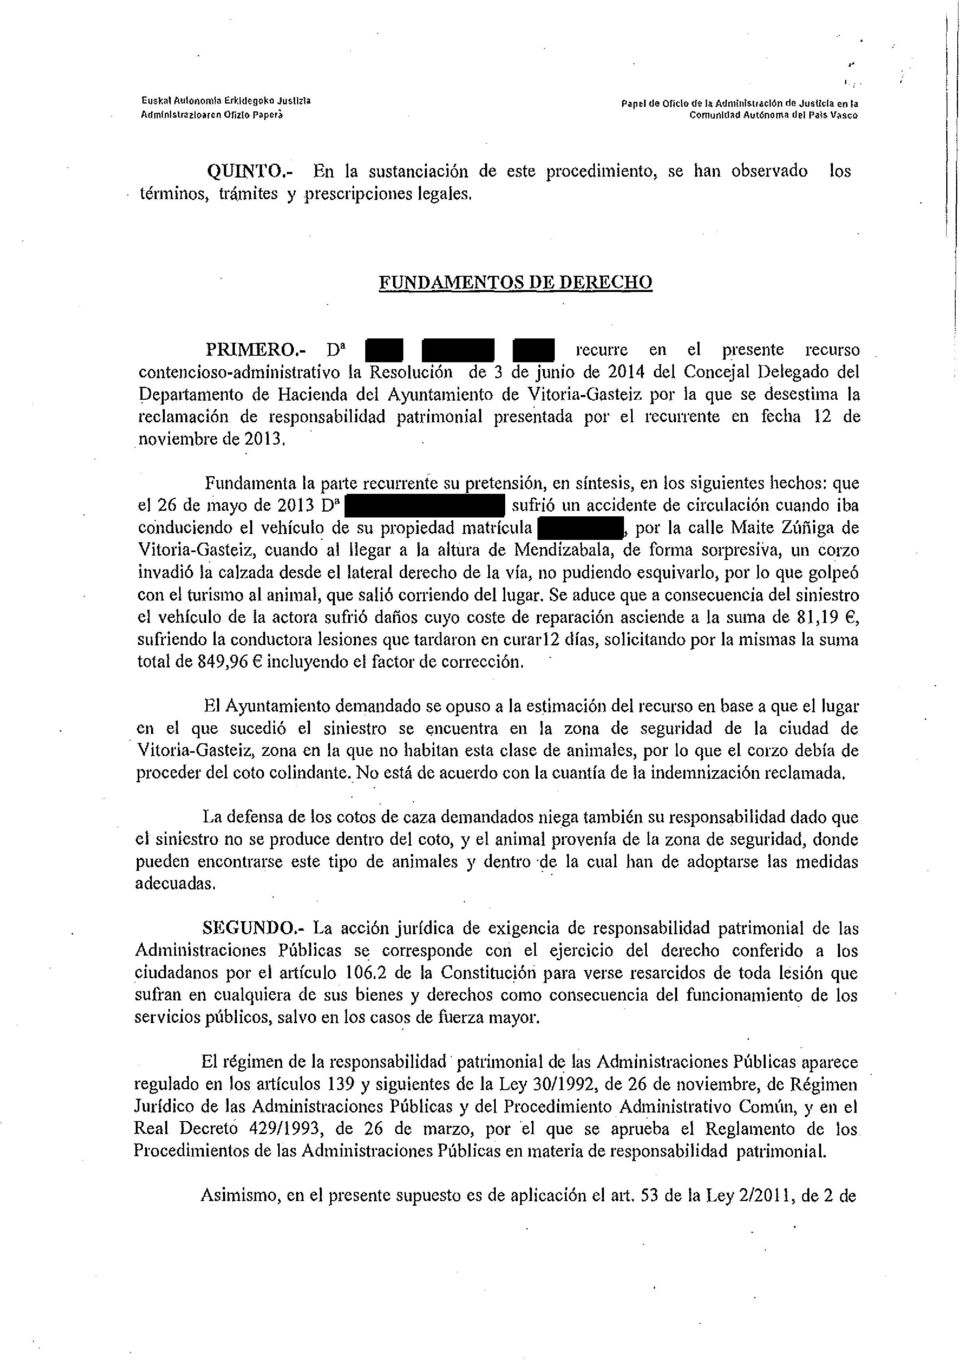 - D' recurre en el presente recurso contencioso-administrativo la Resolución de 3 de junio de 2014 del Concejal Delegado del Depattarnento de Hacienda del Ayuntamiento de Vitoria-Gasteiz por la que